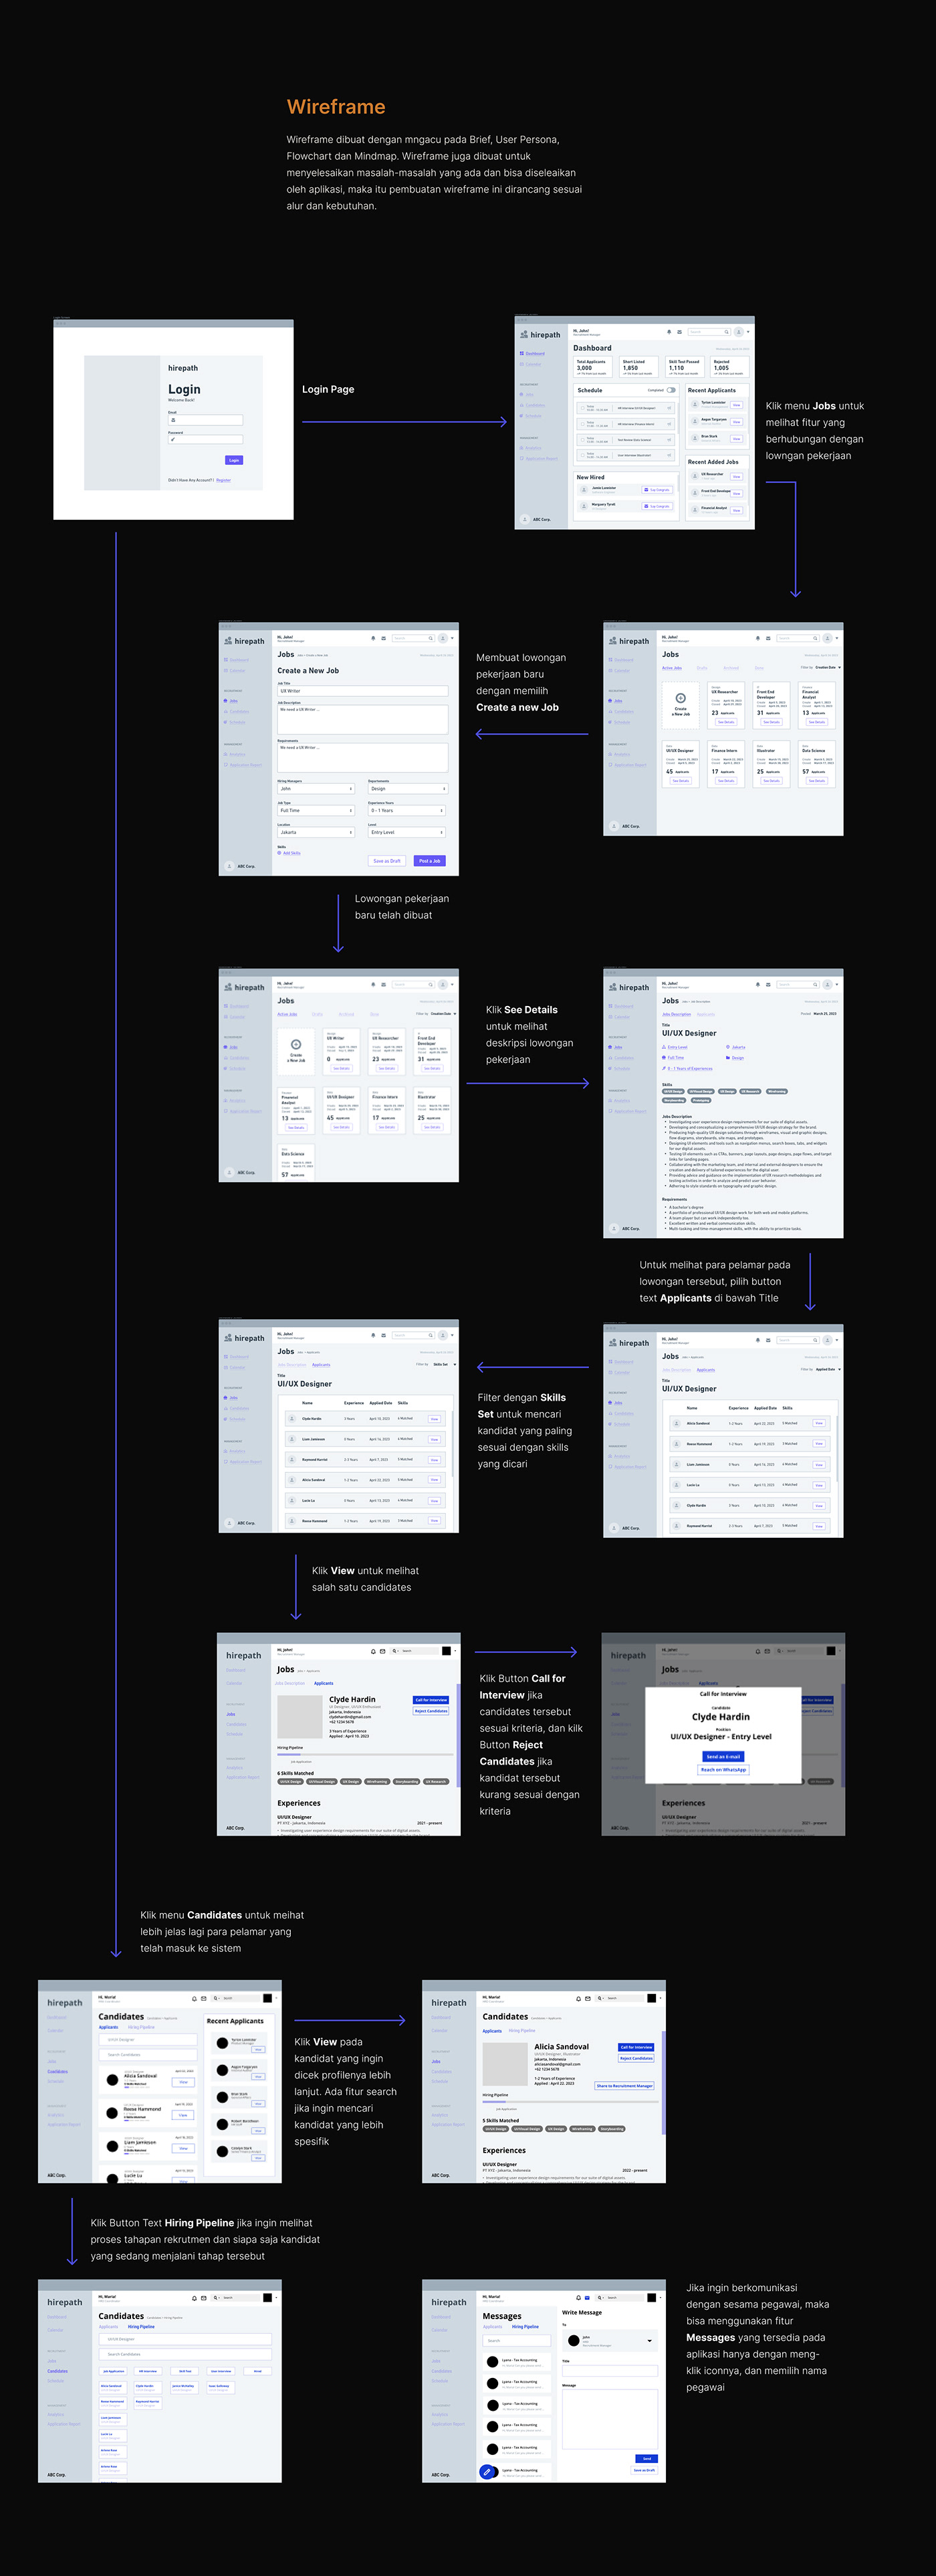 UI/UX UI uidesign UX design Web Design  Website product design  graphic design  Figma hris